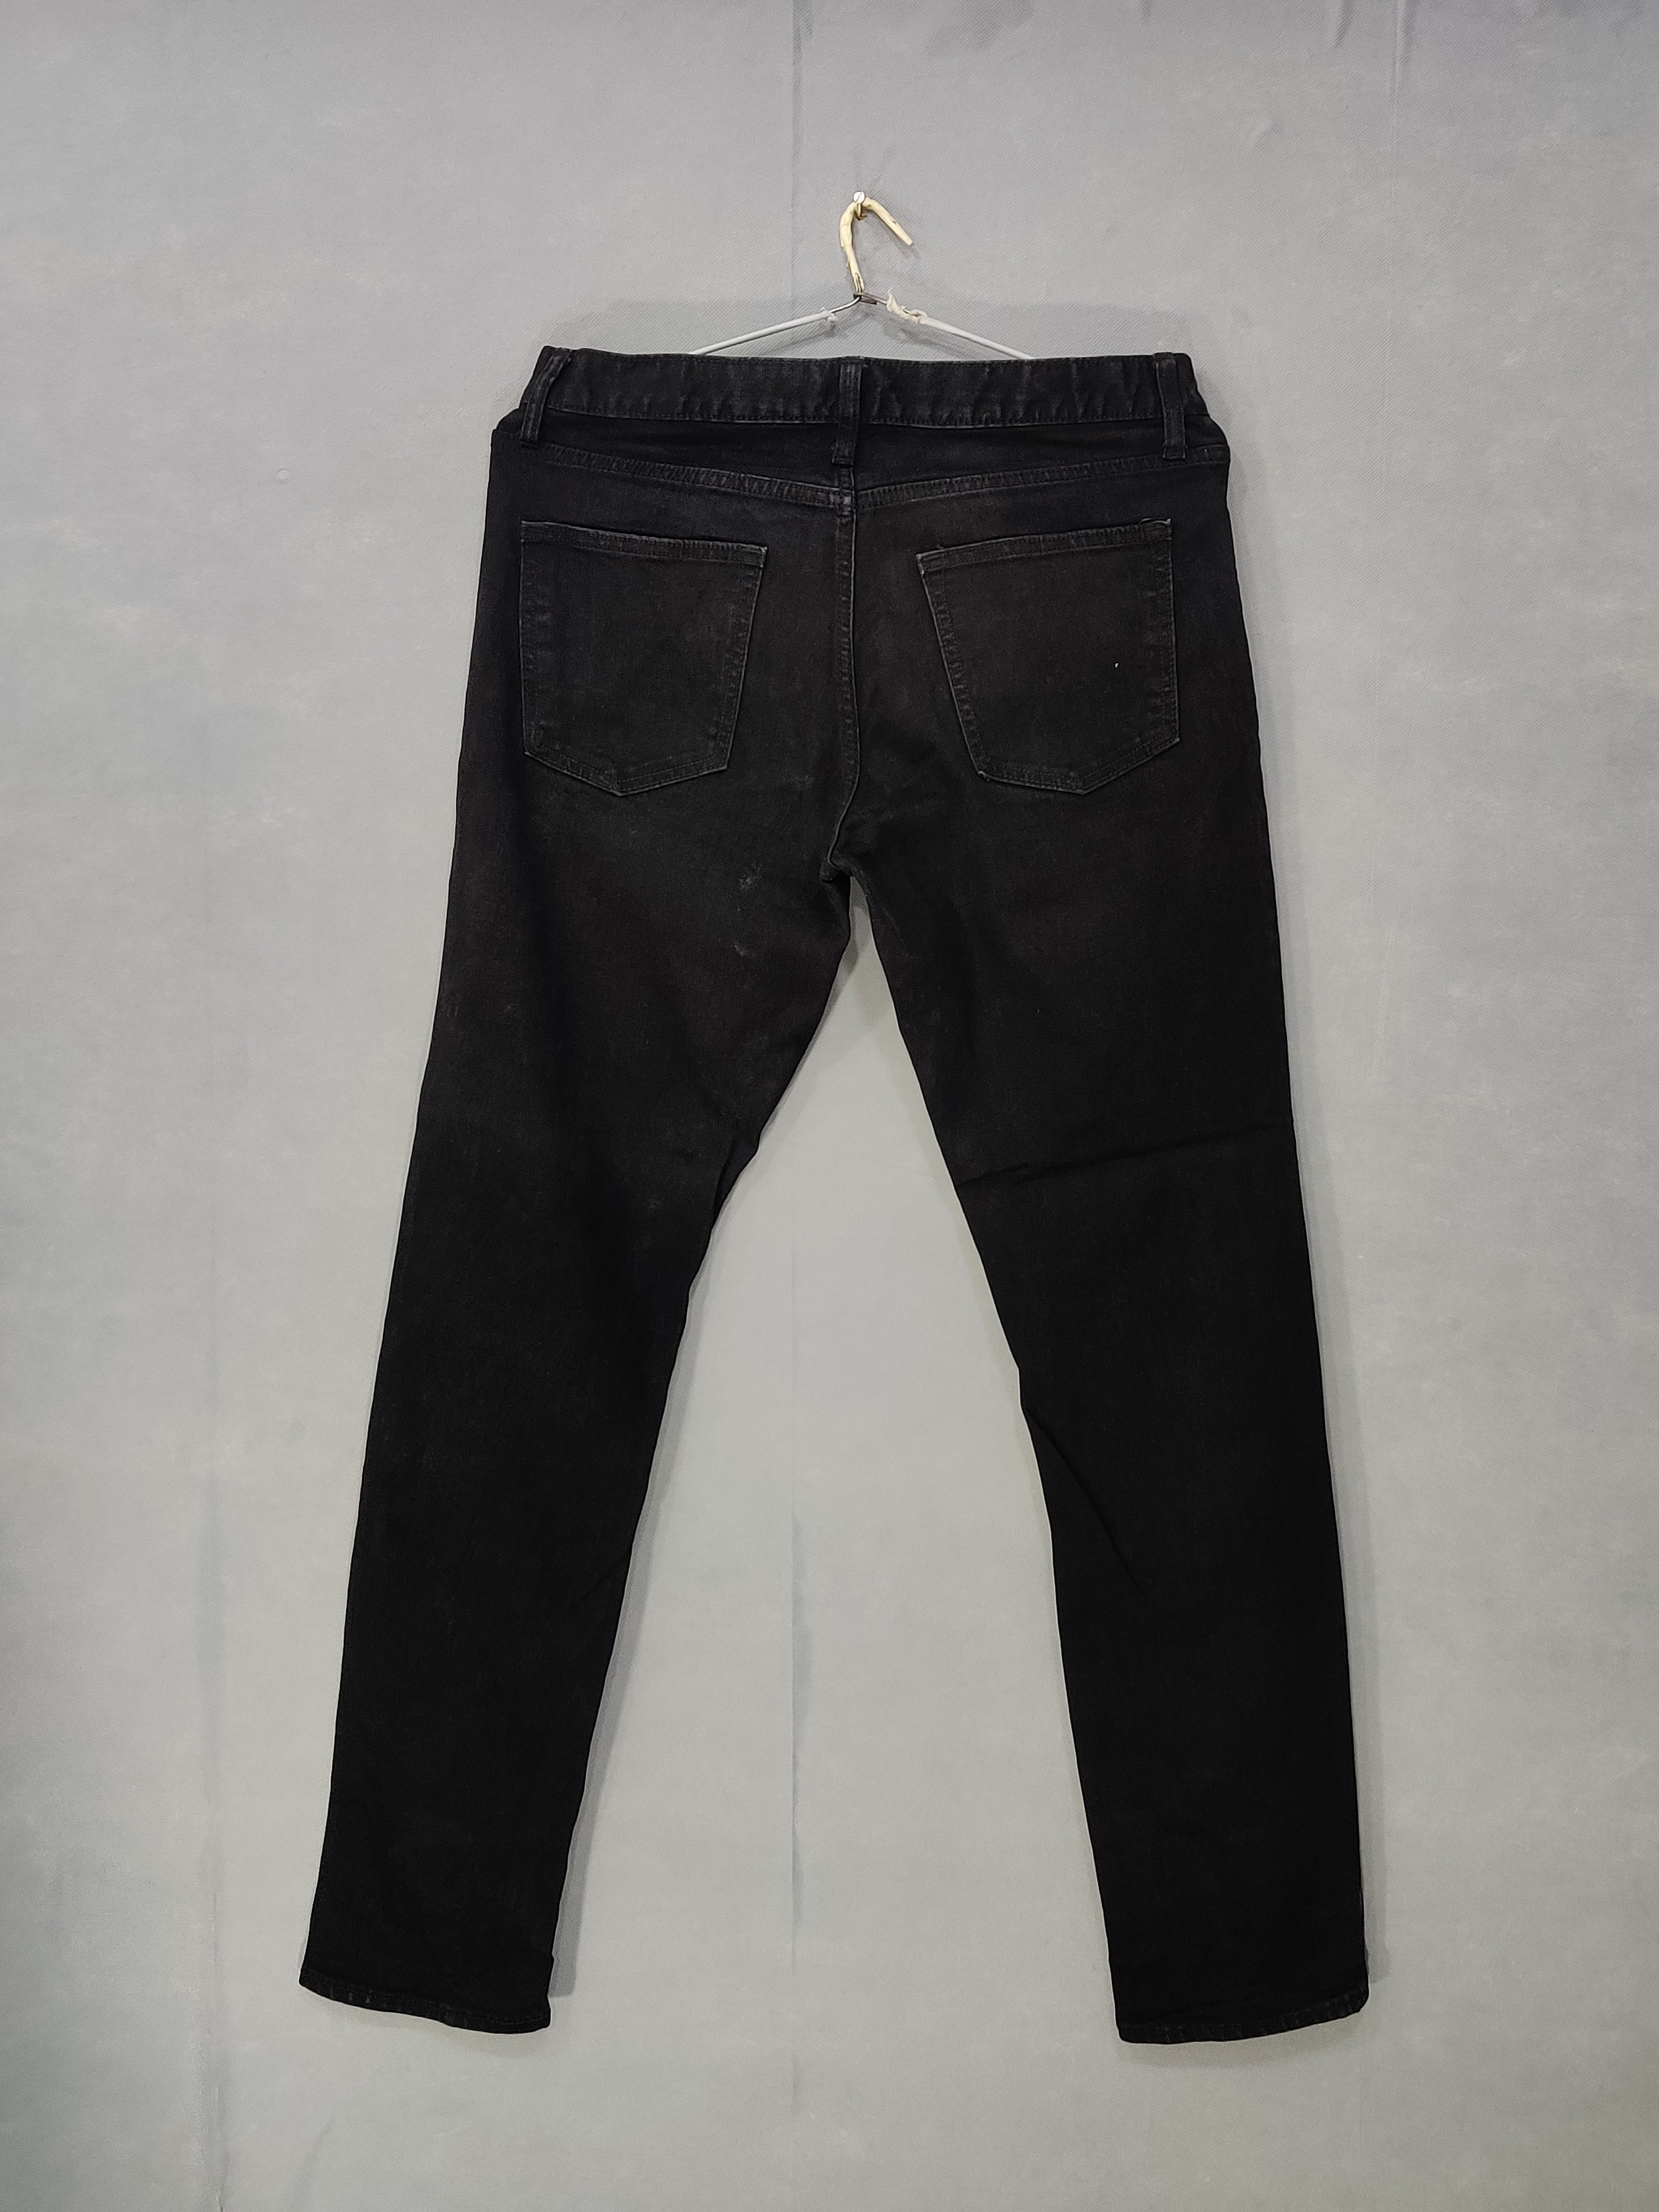 Old Navy Branded Original Denim Jeans For Men